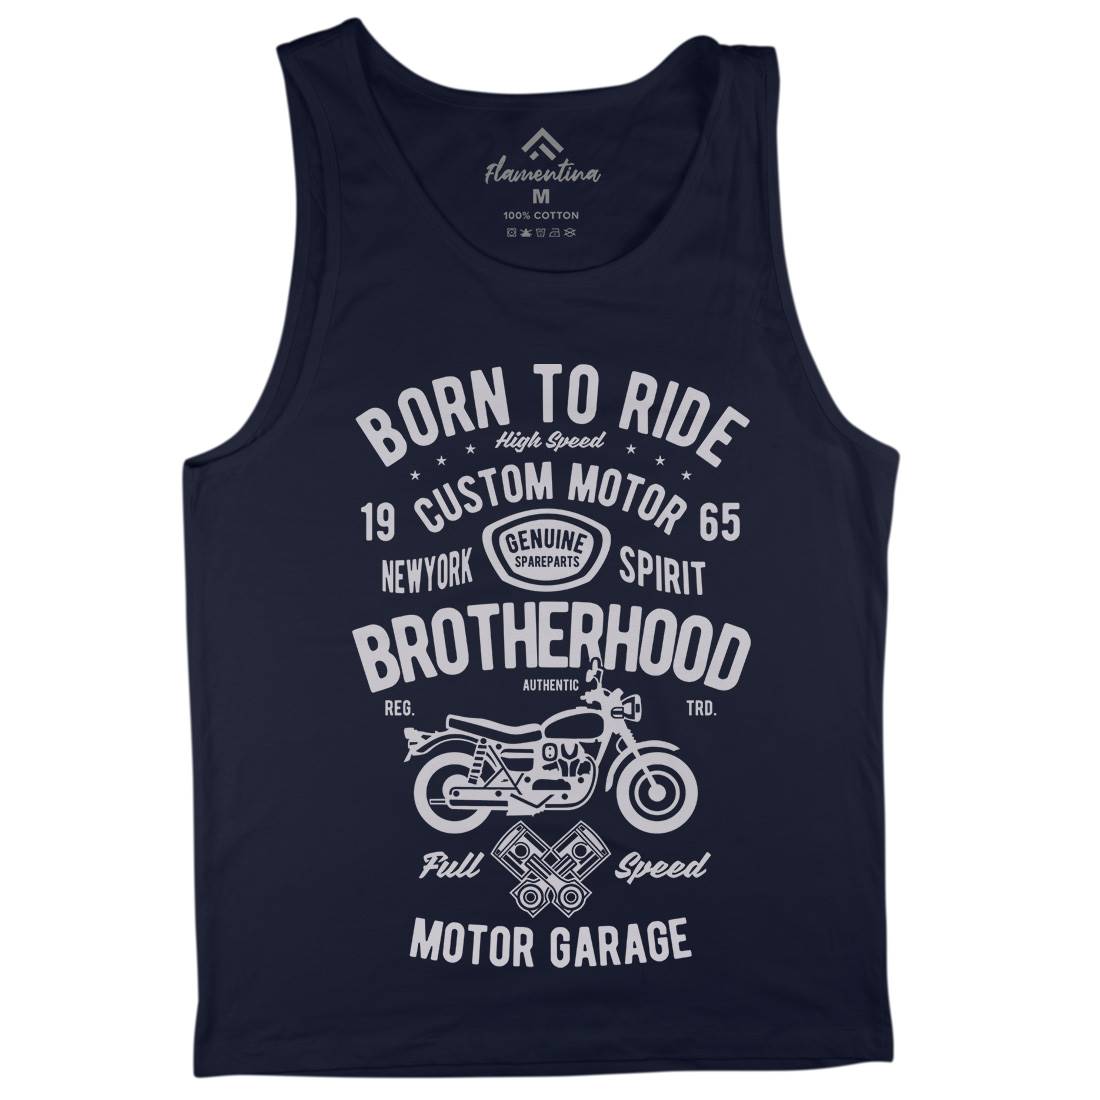 Brotherhood Mens Tank Top Vest Motorcycles B423